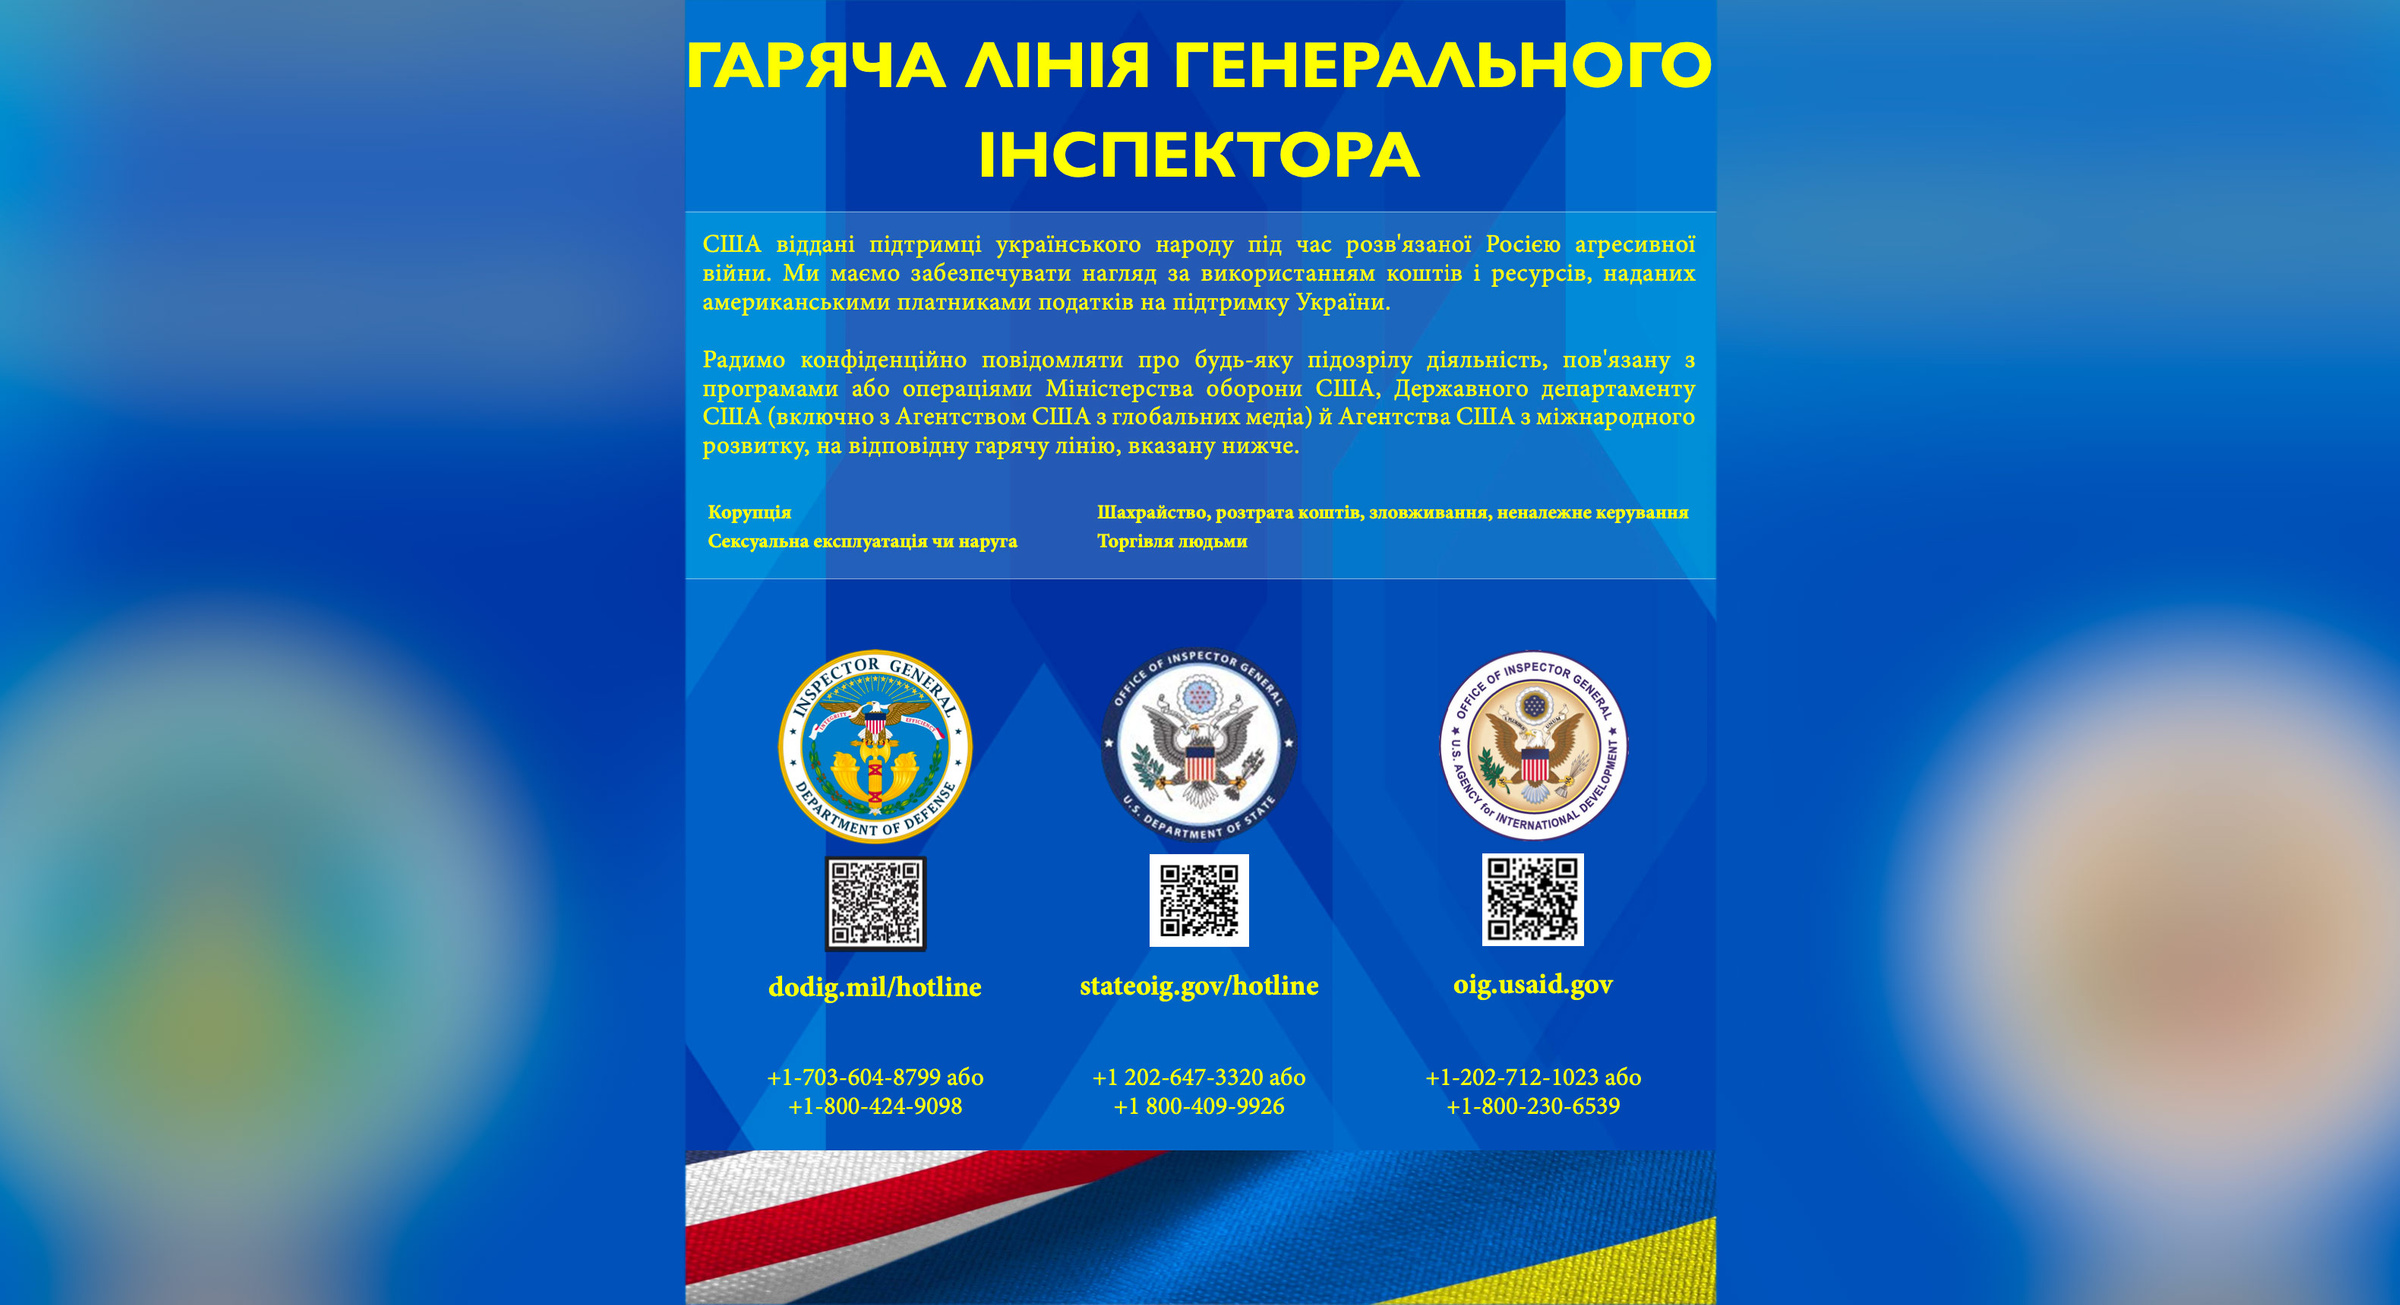 США открыли горячую линию для сообщений о коррупции на Украине. Фото © Сайт генерального инспектора Украины